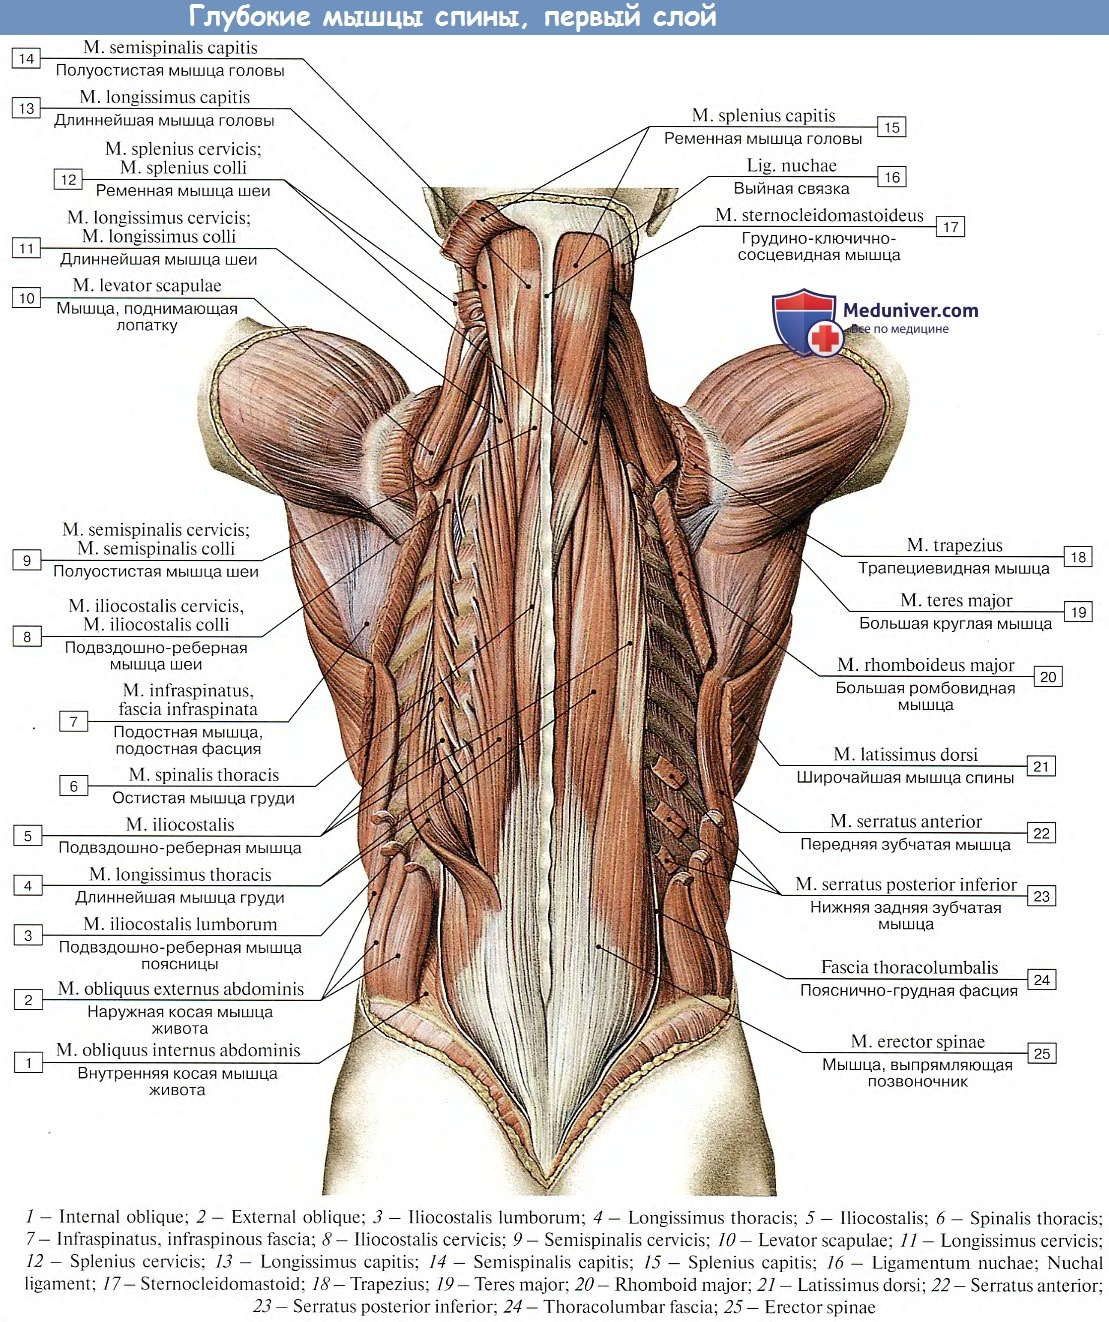 Учебное пособие «биомеханика мышц»